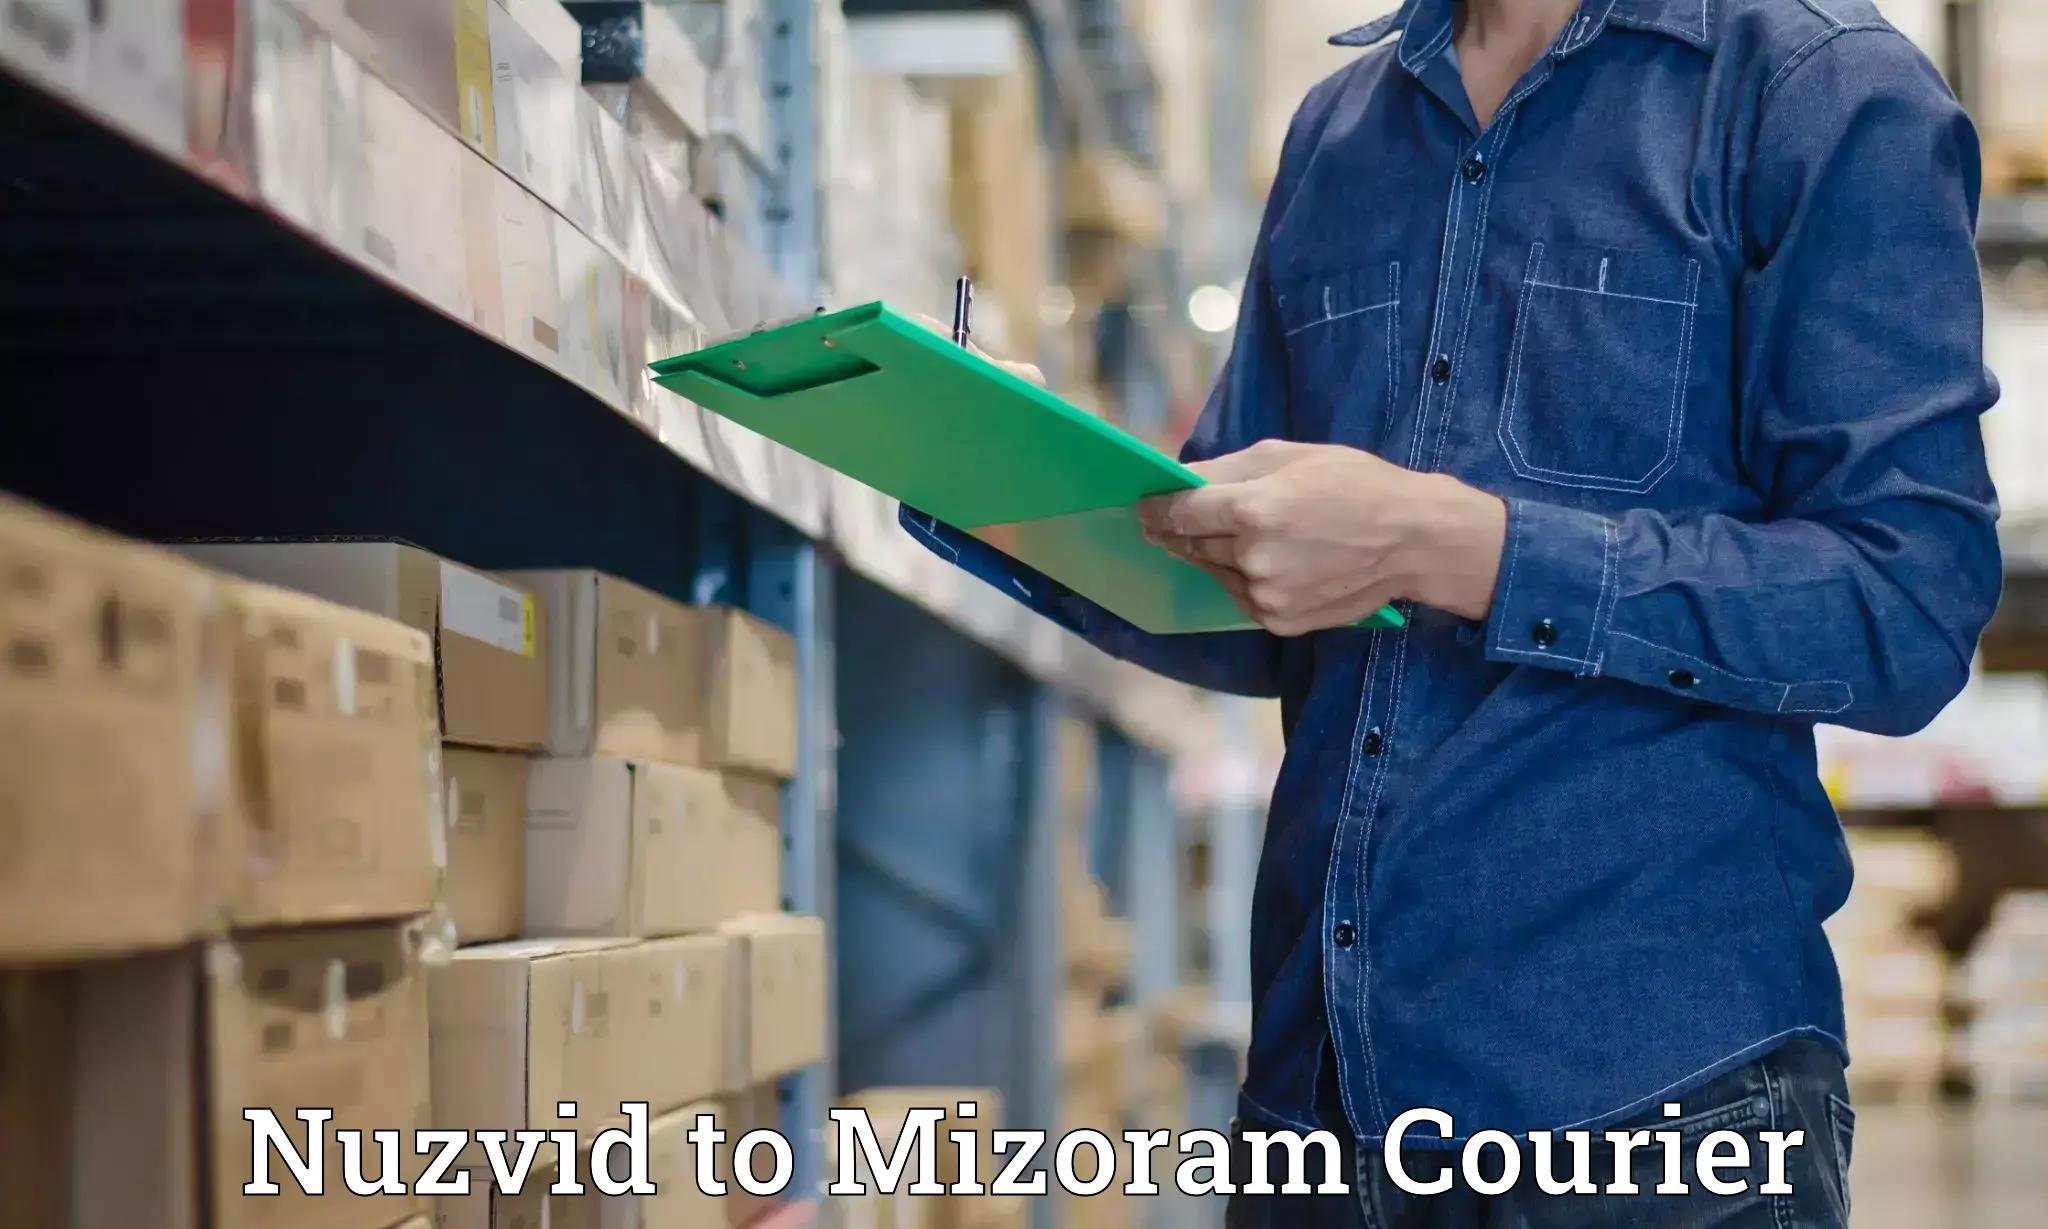 E-commerce fulfillment Nuzvid to Darlawn